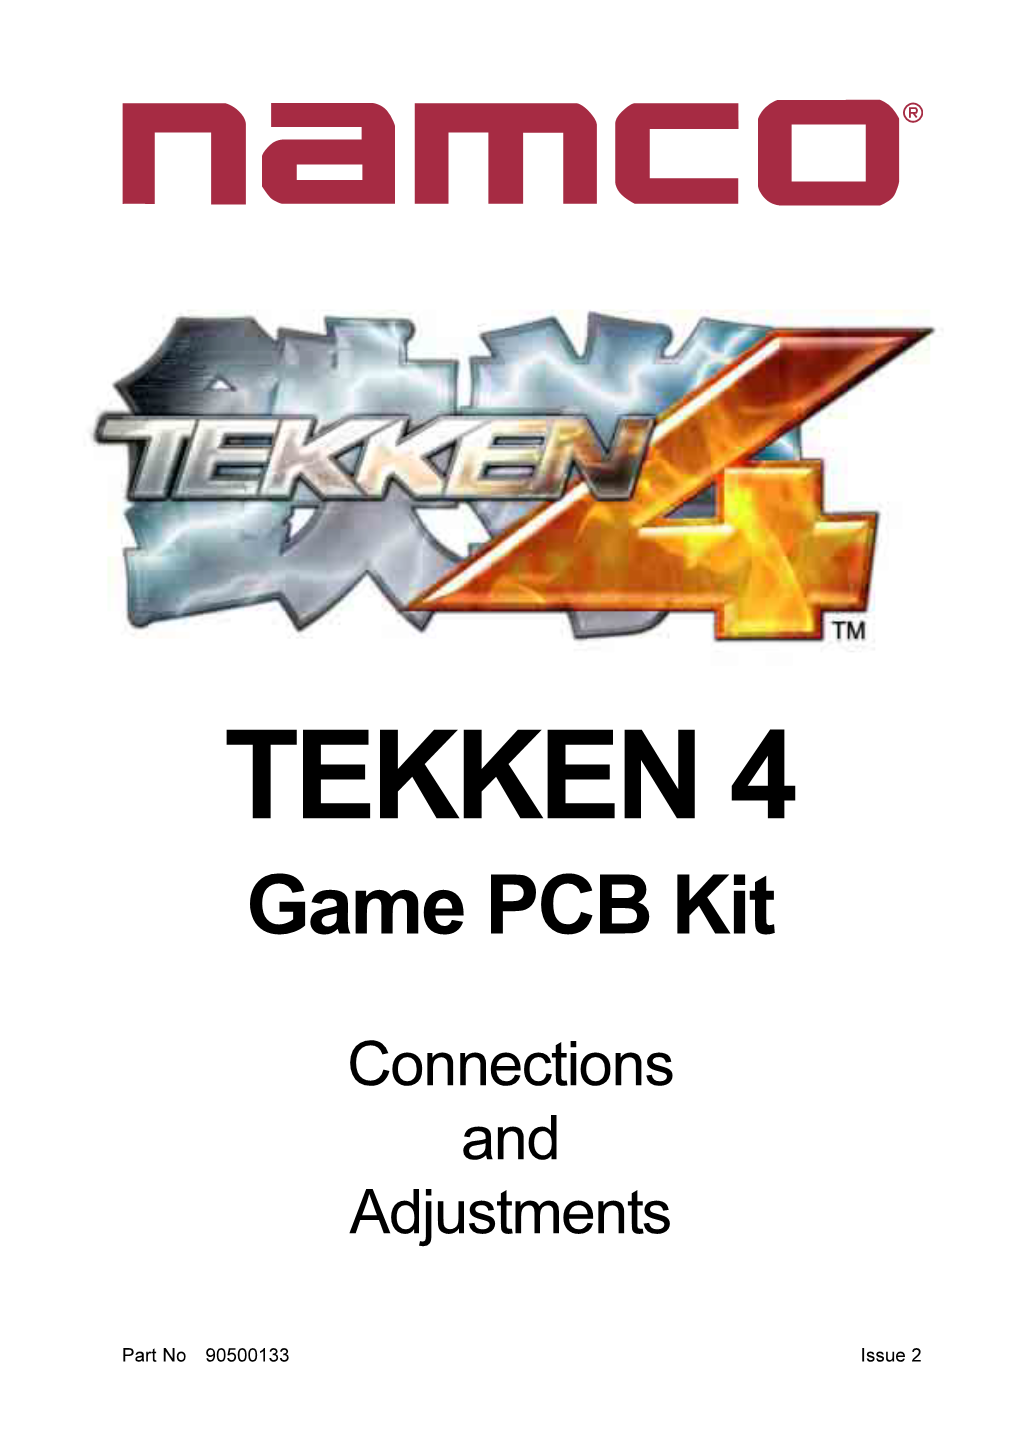 TEKKEN 4 Game PCB Kit